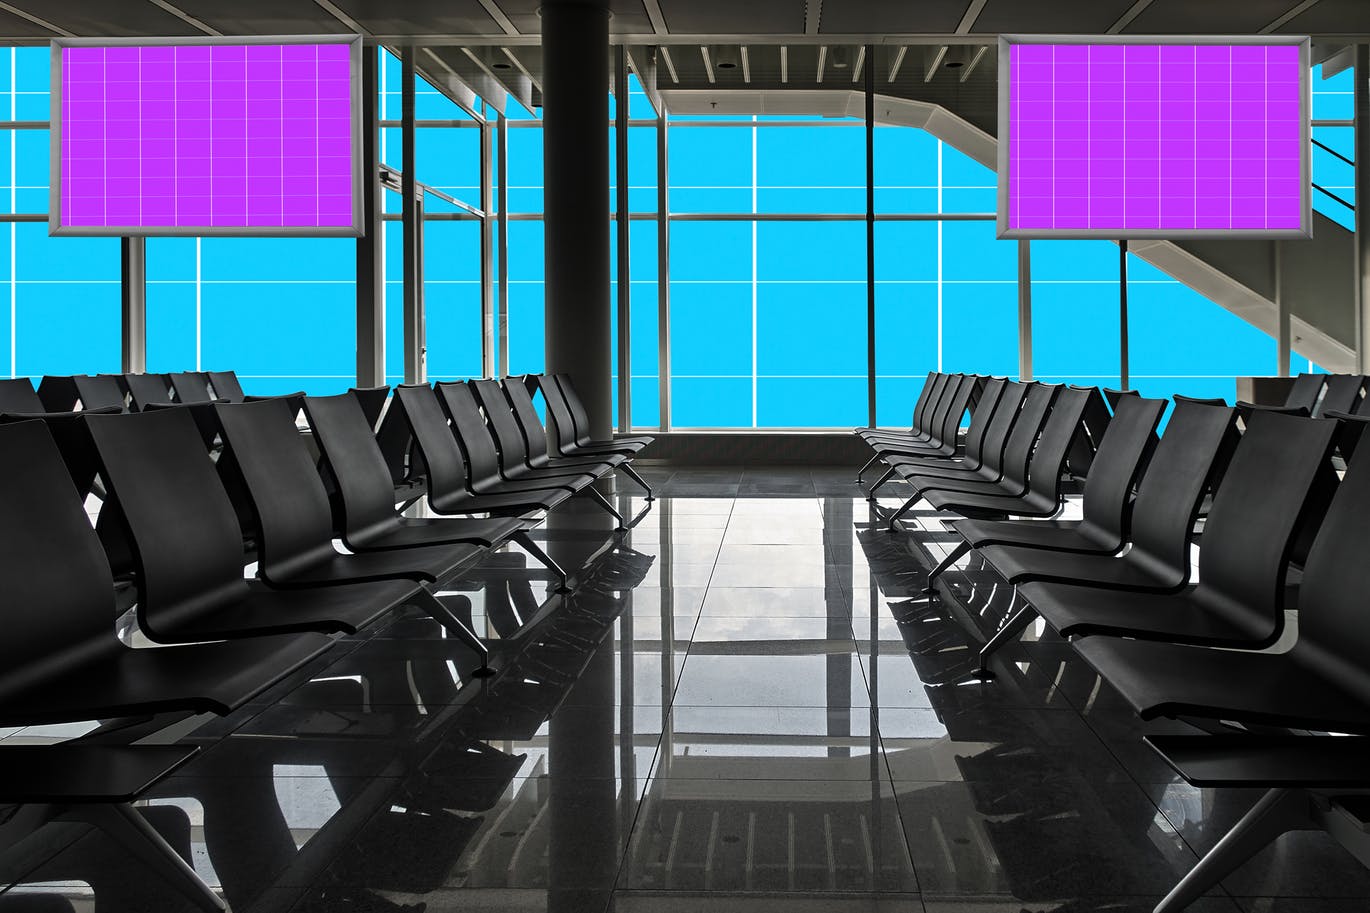 机场航站楼电视屏幕广告设计效果图样机非凡图库精选v01 Airport_Terminal-01插图